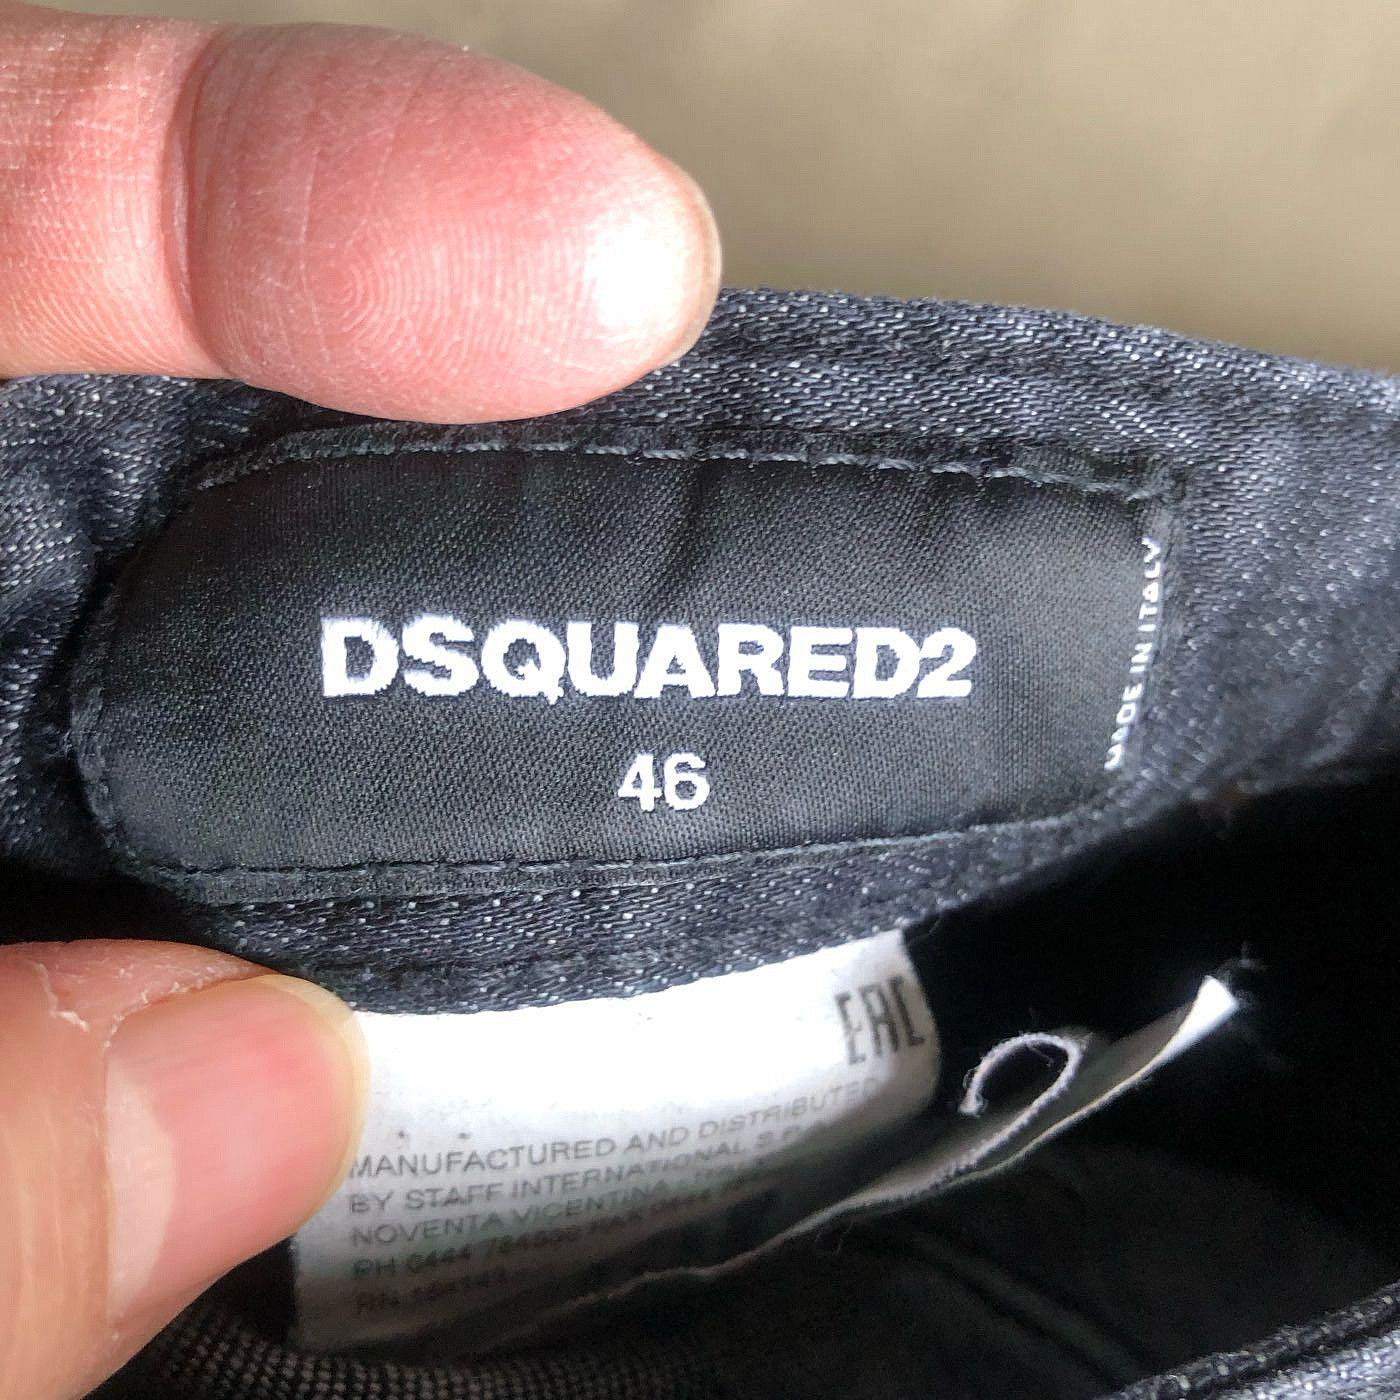 品味人生2]保證正品Dsquared2 D2 黑色破刷白補洞牛仔褲size 46 tidy